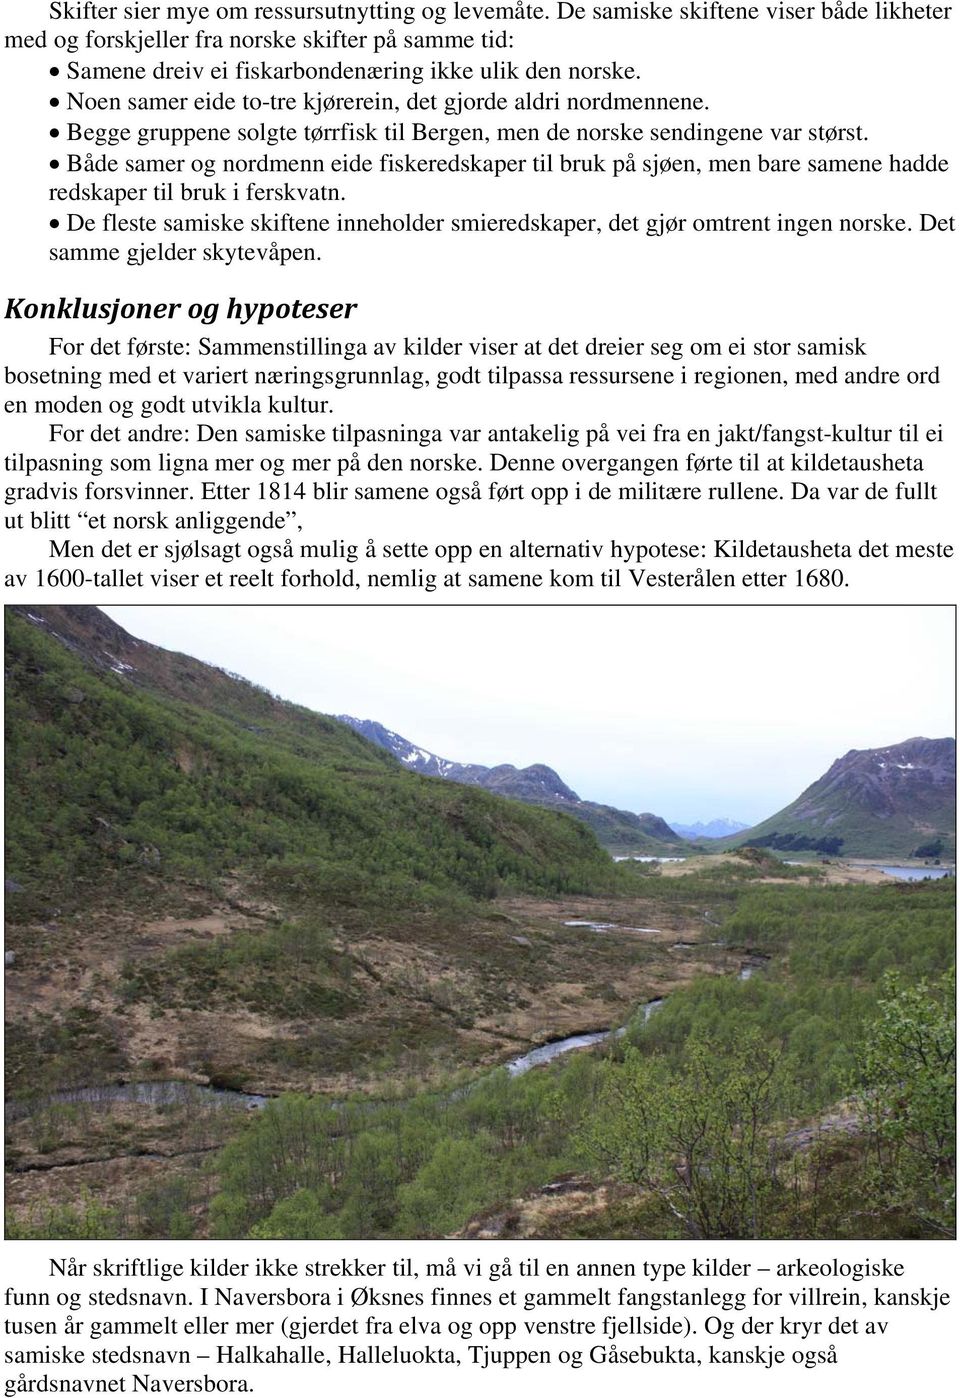 Både samer og nordmenn eide fiskeredskaper til bruk på sjøen, men bare samene hadde redskaper til bruk i ferskvatn. De fleste samiske skiftene inneholder smieredskaper, det gjør omtrent ingen norske.